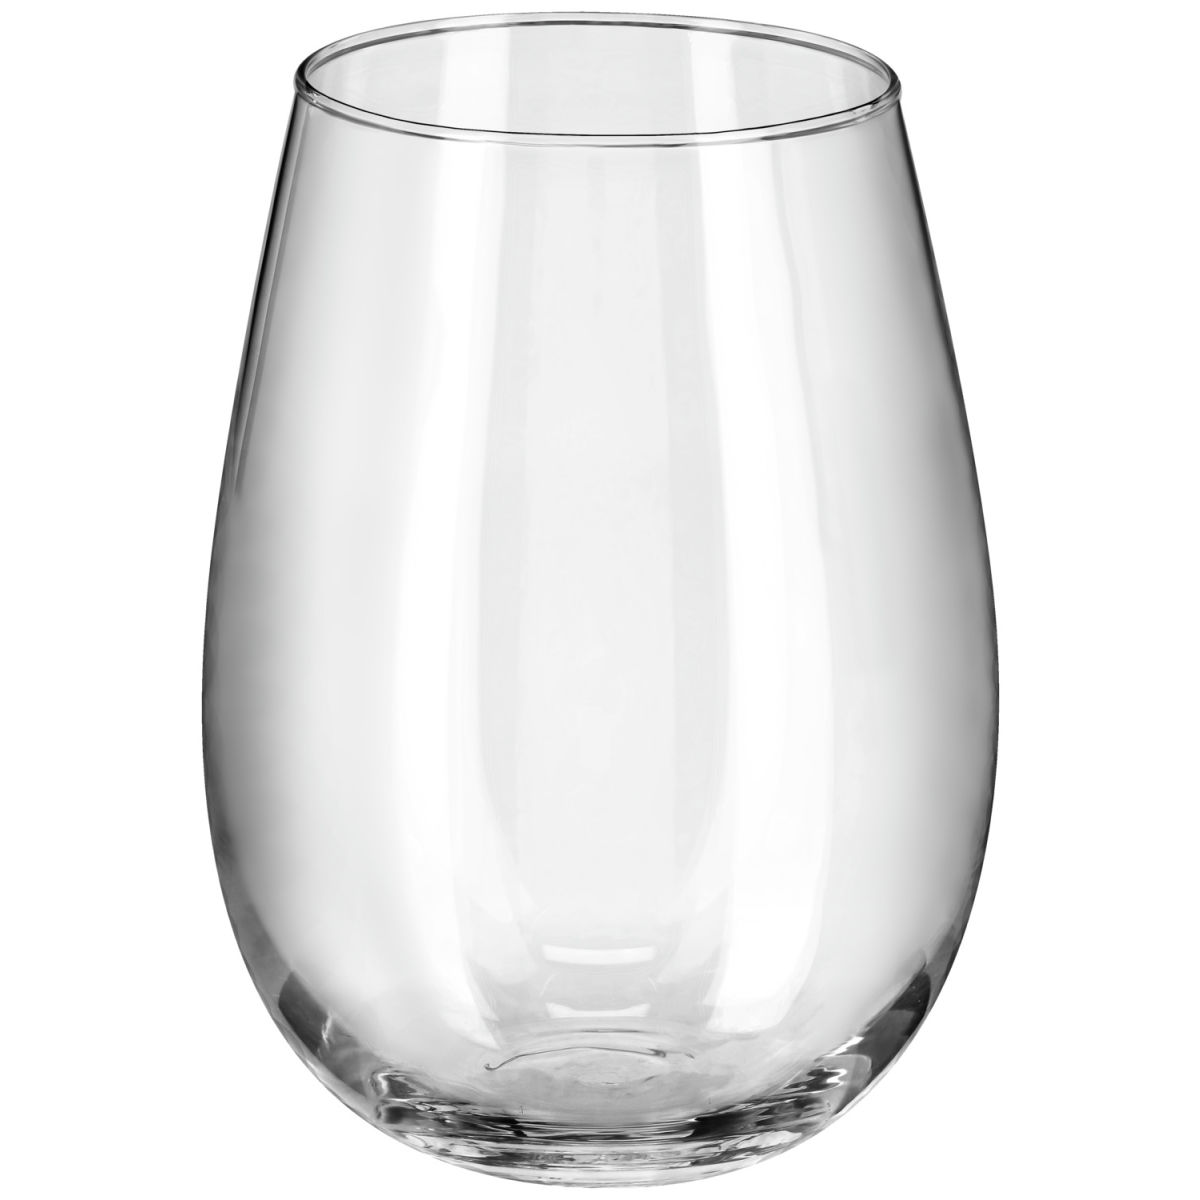 Krosno Witte wijnglas Harmony zonder steel; 500ml, 8.2x12.3 cm (ØxH); transparant; 6 stuk / verpakking